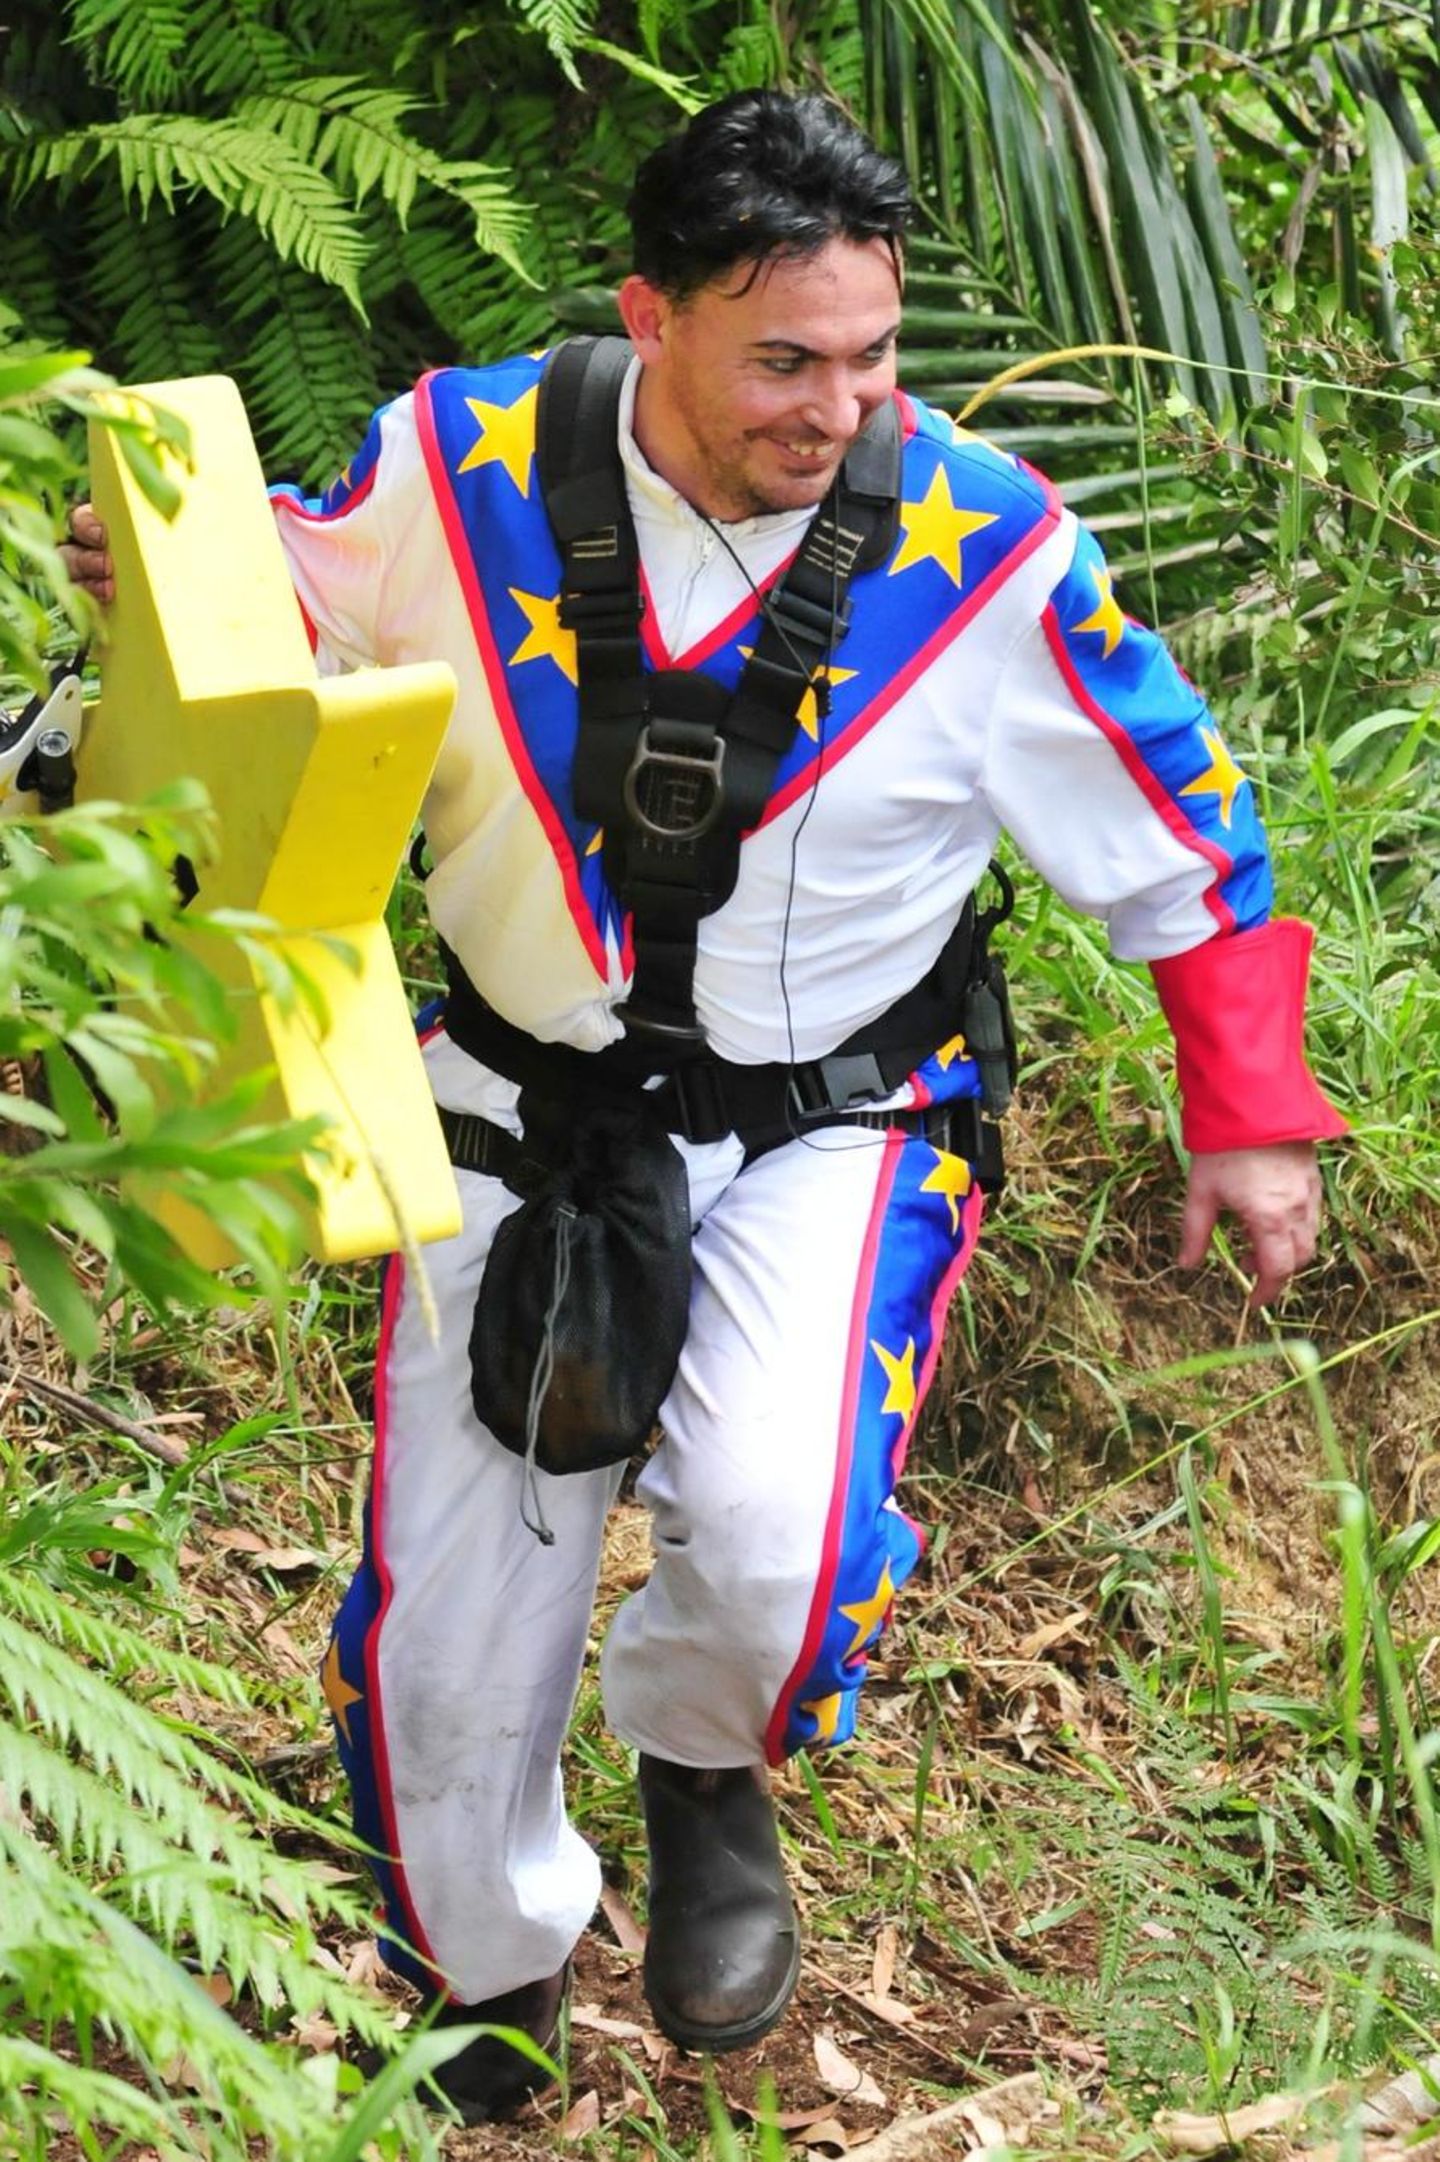 Matthias Mangiapane entwickelt sich im Dschungelcamp 2018 zu dem Fashion-It-Boy überhaupt. Erst der Mais-Kini, dann das Raumschiff-Astronauten-Outfit im "Wonder Woman"-Look - Matthias' Kleidung ist Gesprächsstoff.